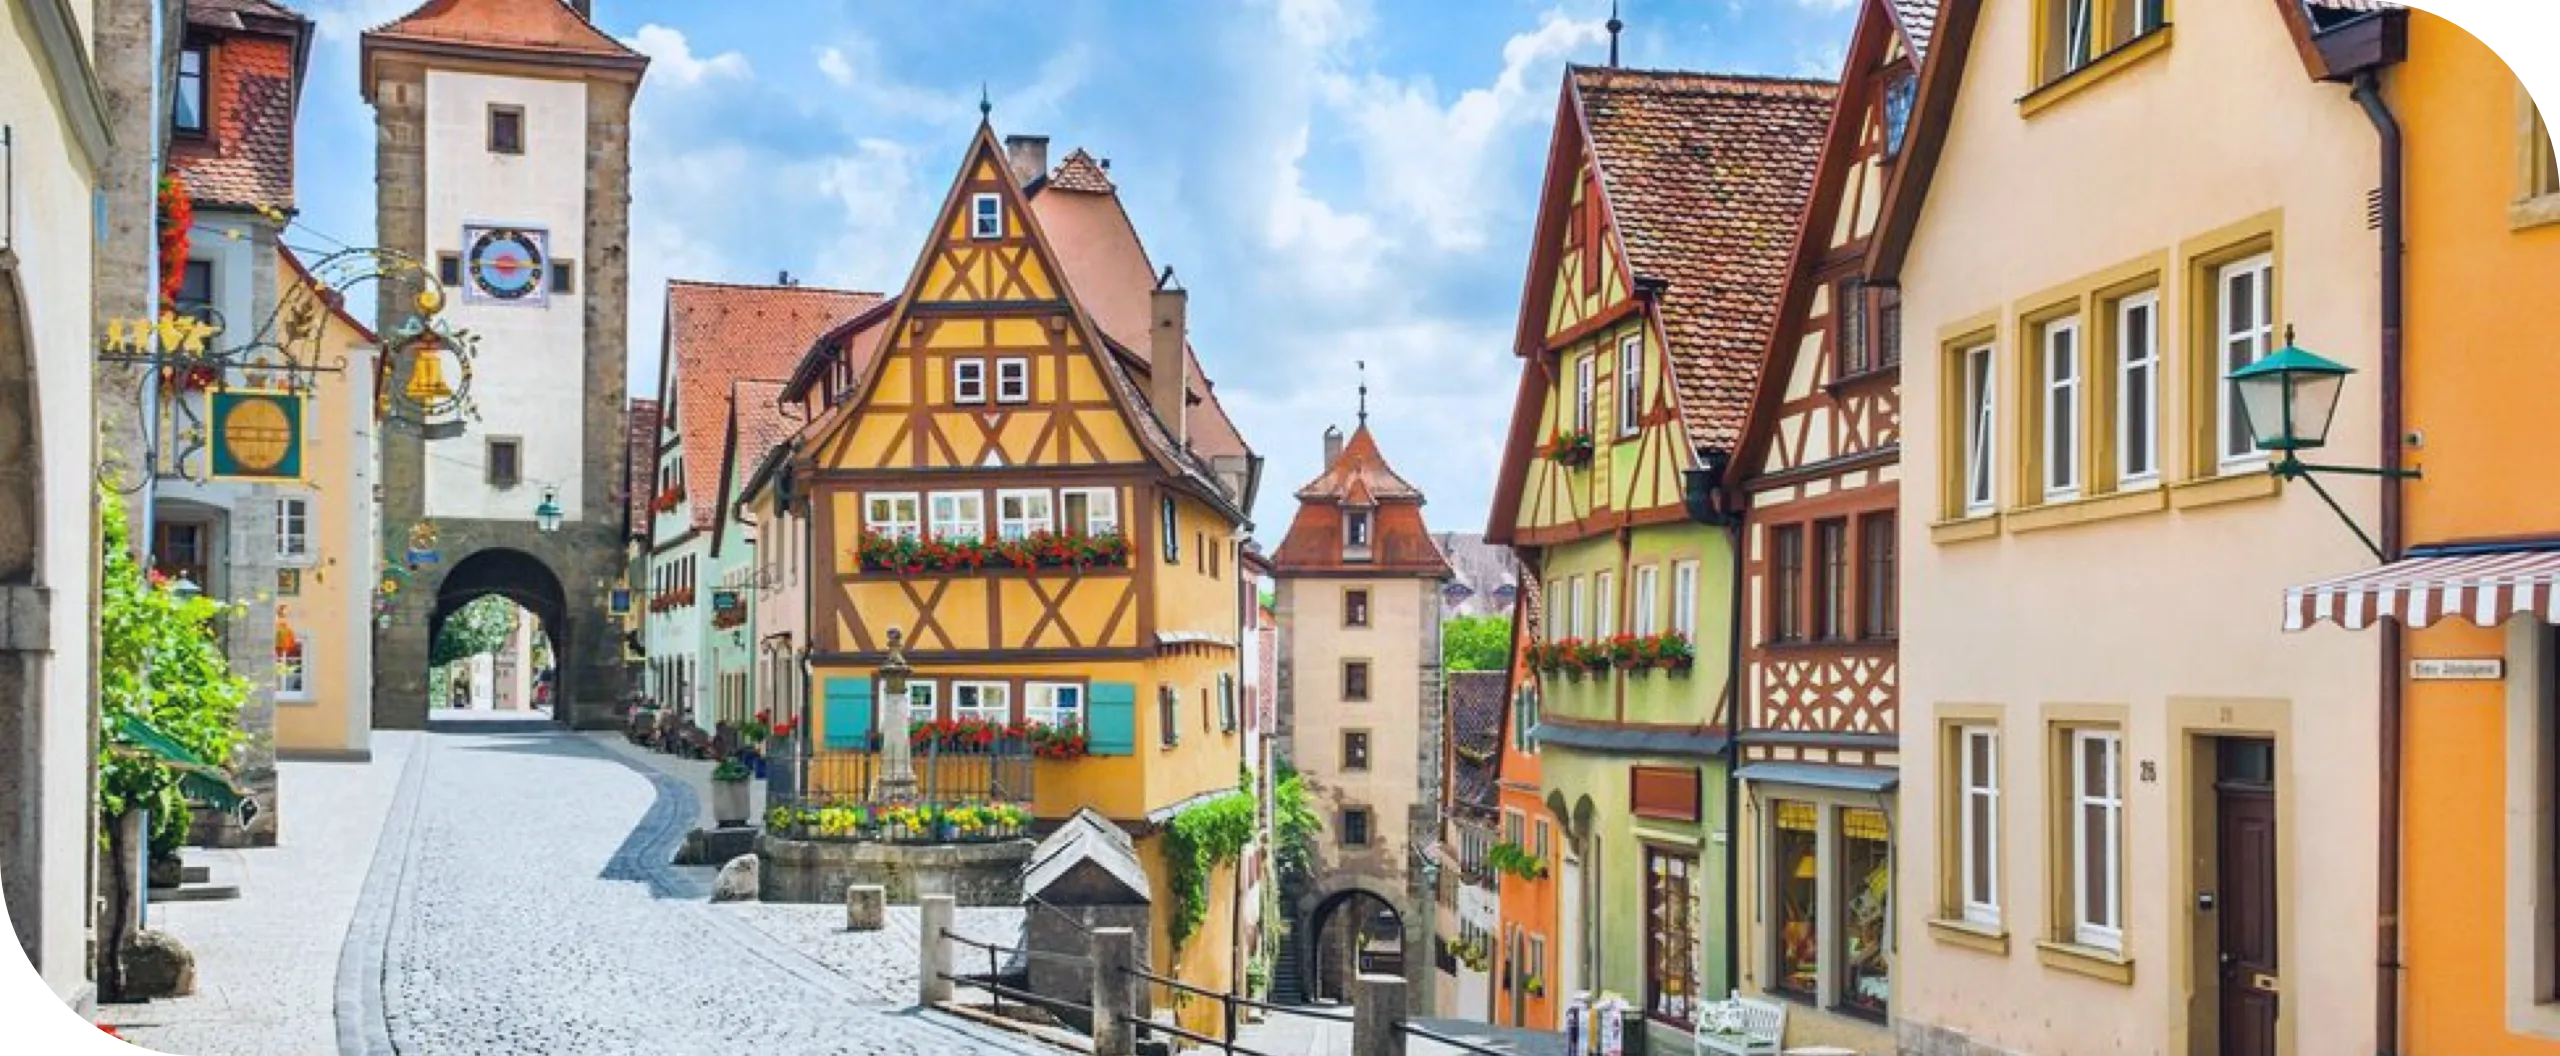 おすすめドイツ語課程 ドイツ語学習で新たな視野を広げよう 留学に旅行 仕事に使える